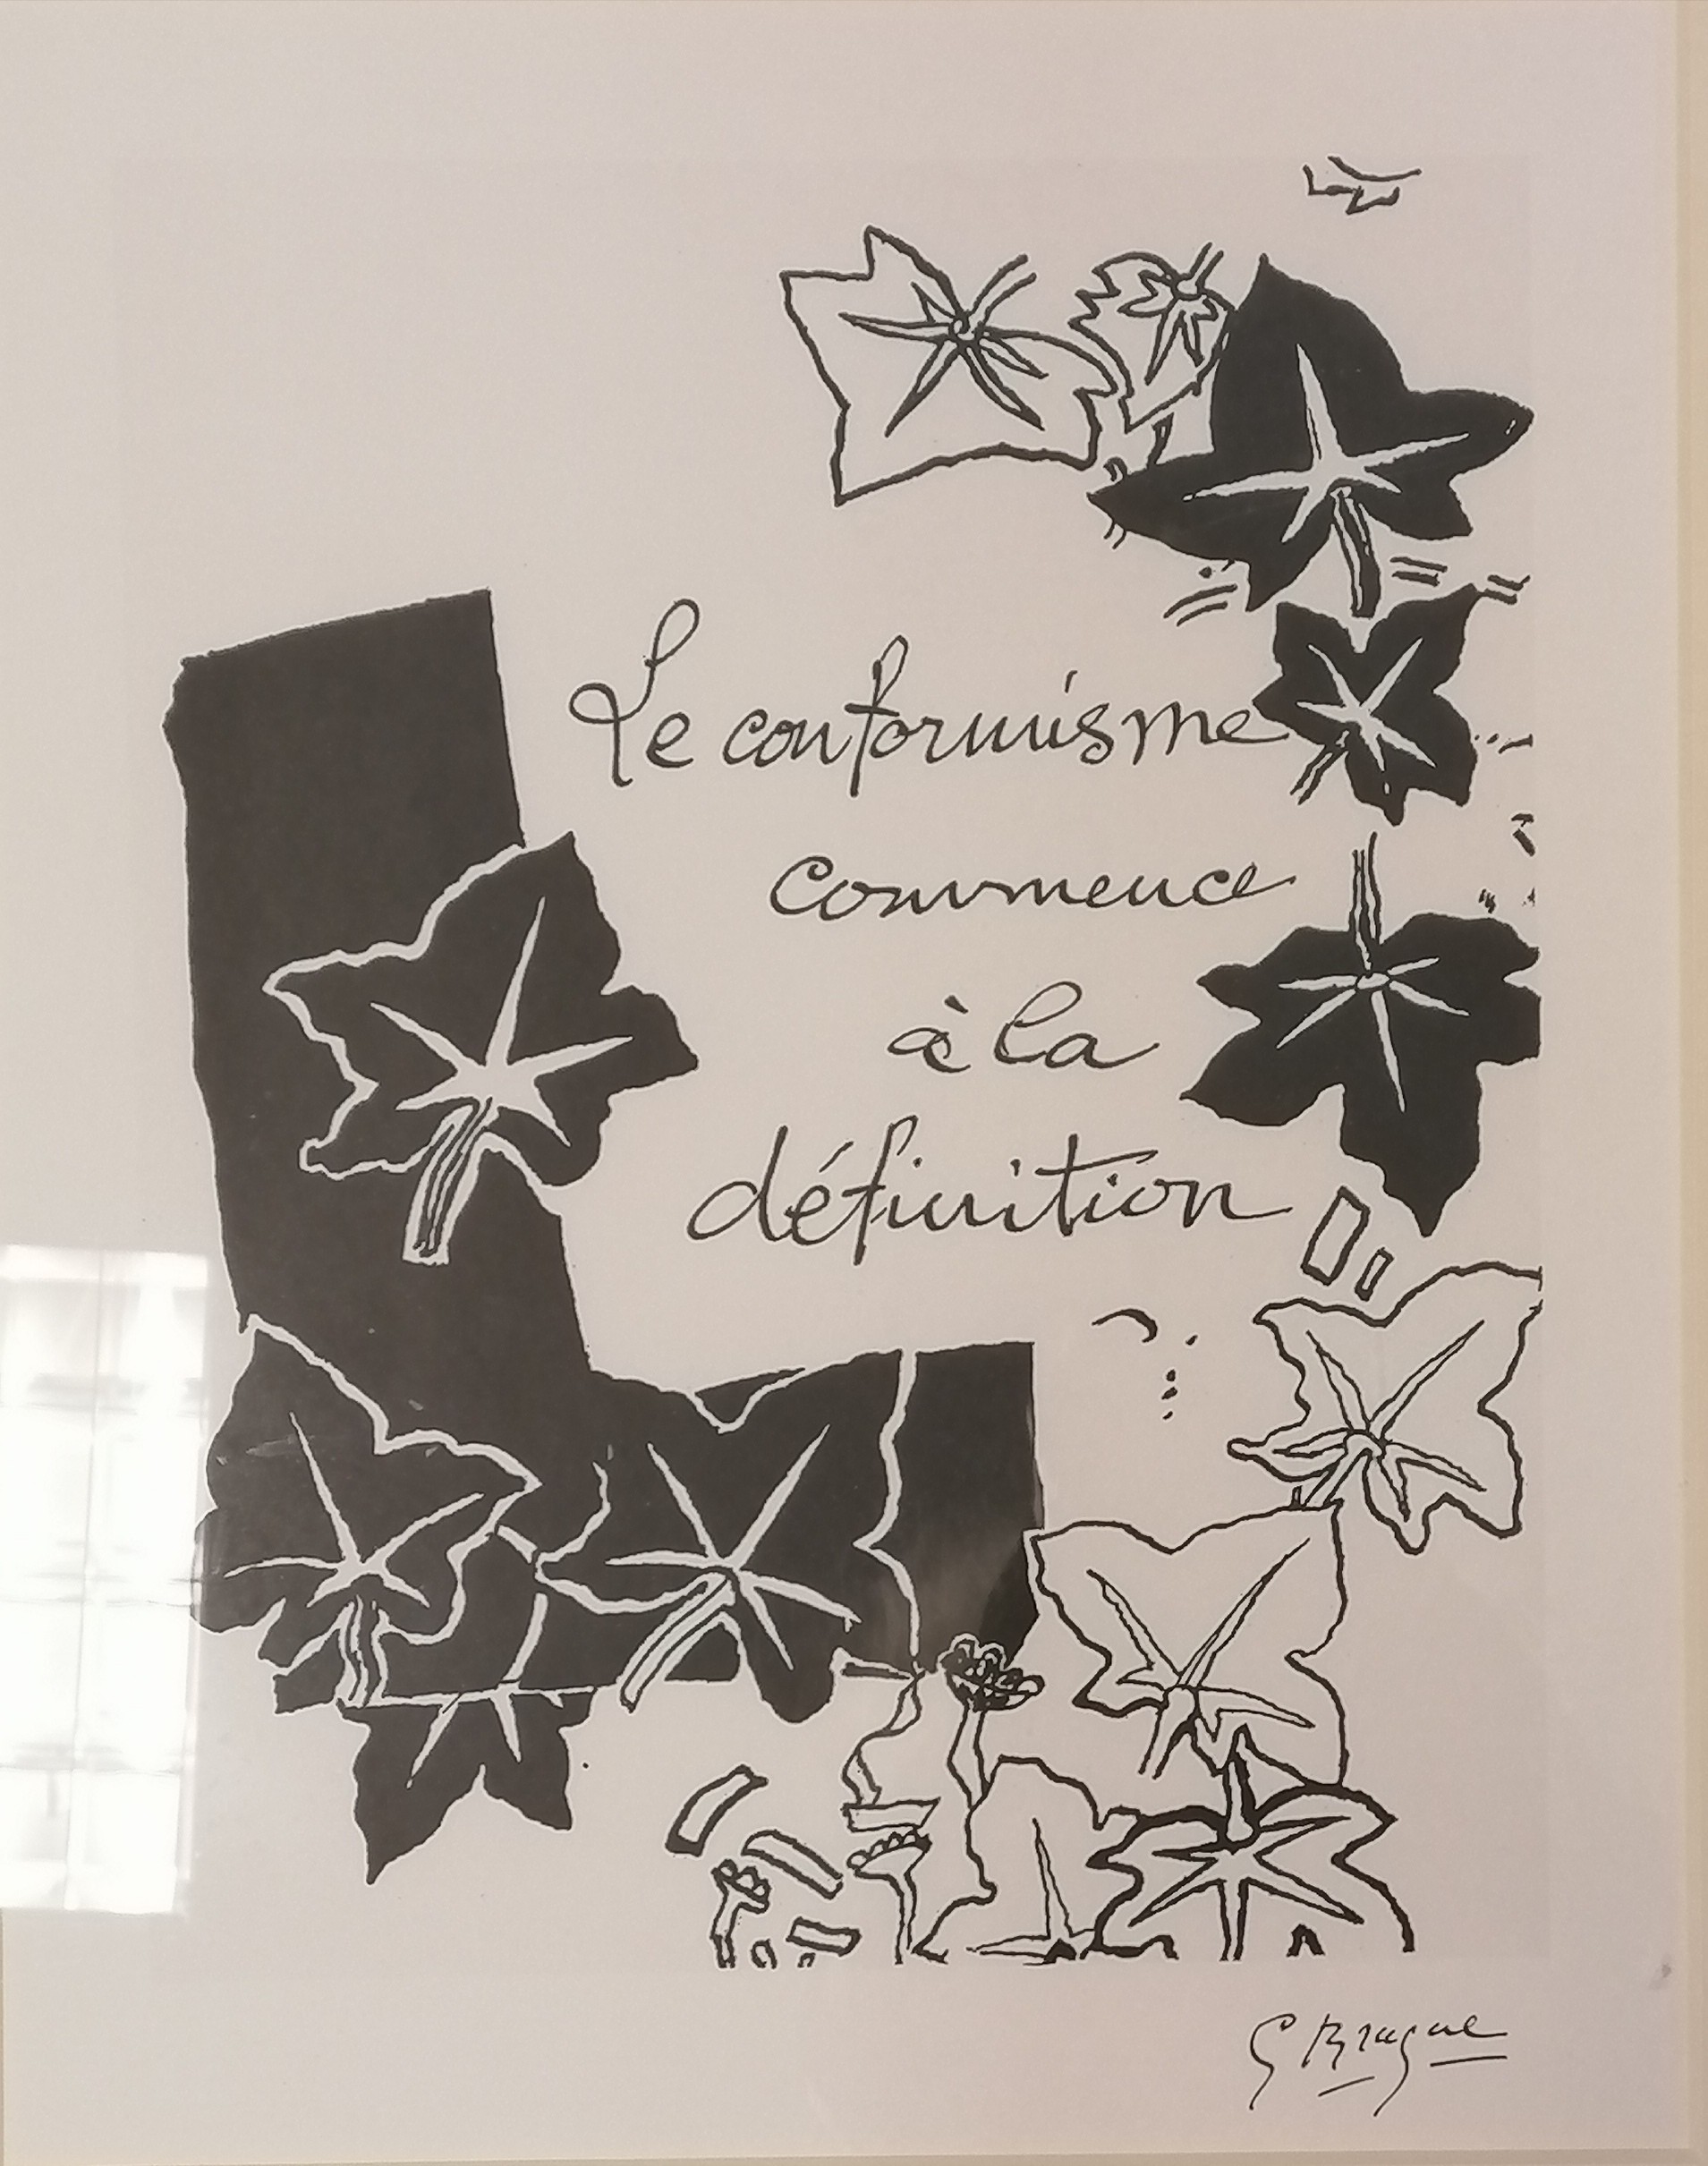 Framed French print 'Le conformisme commence à la définition' after Georges Braque - 56cm x 66cm - Image 2 of 2